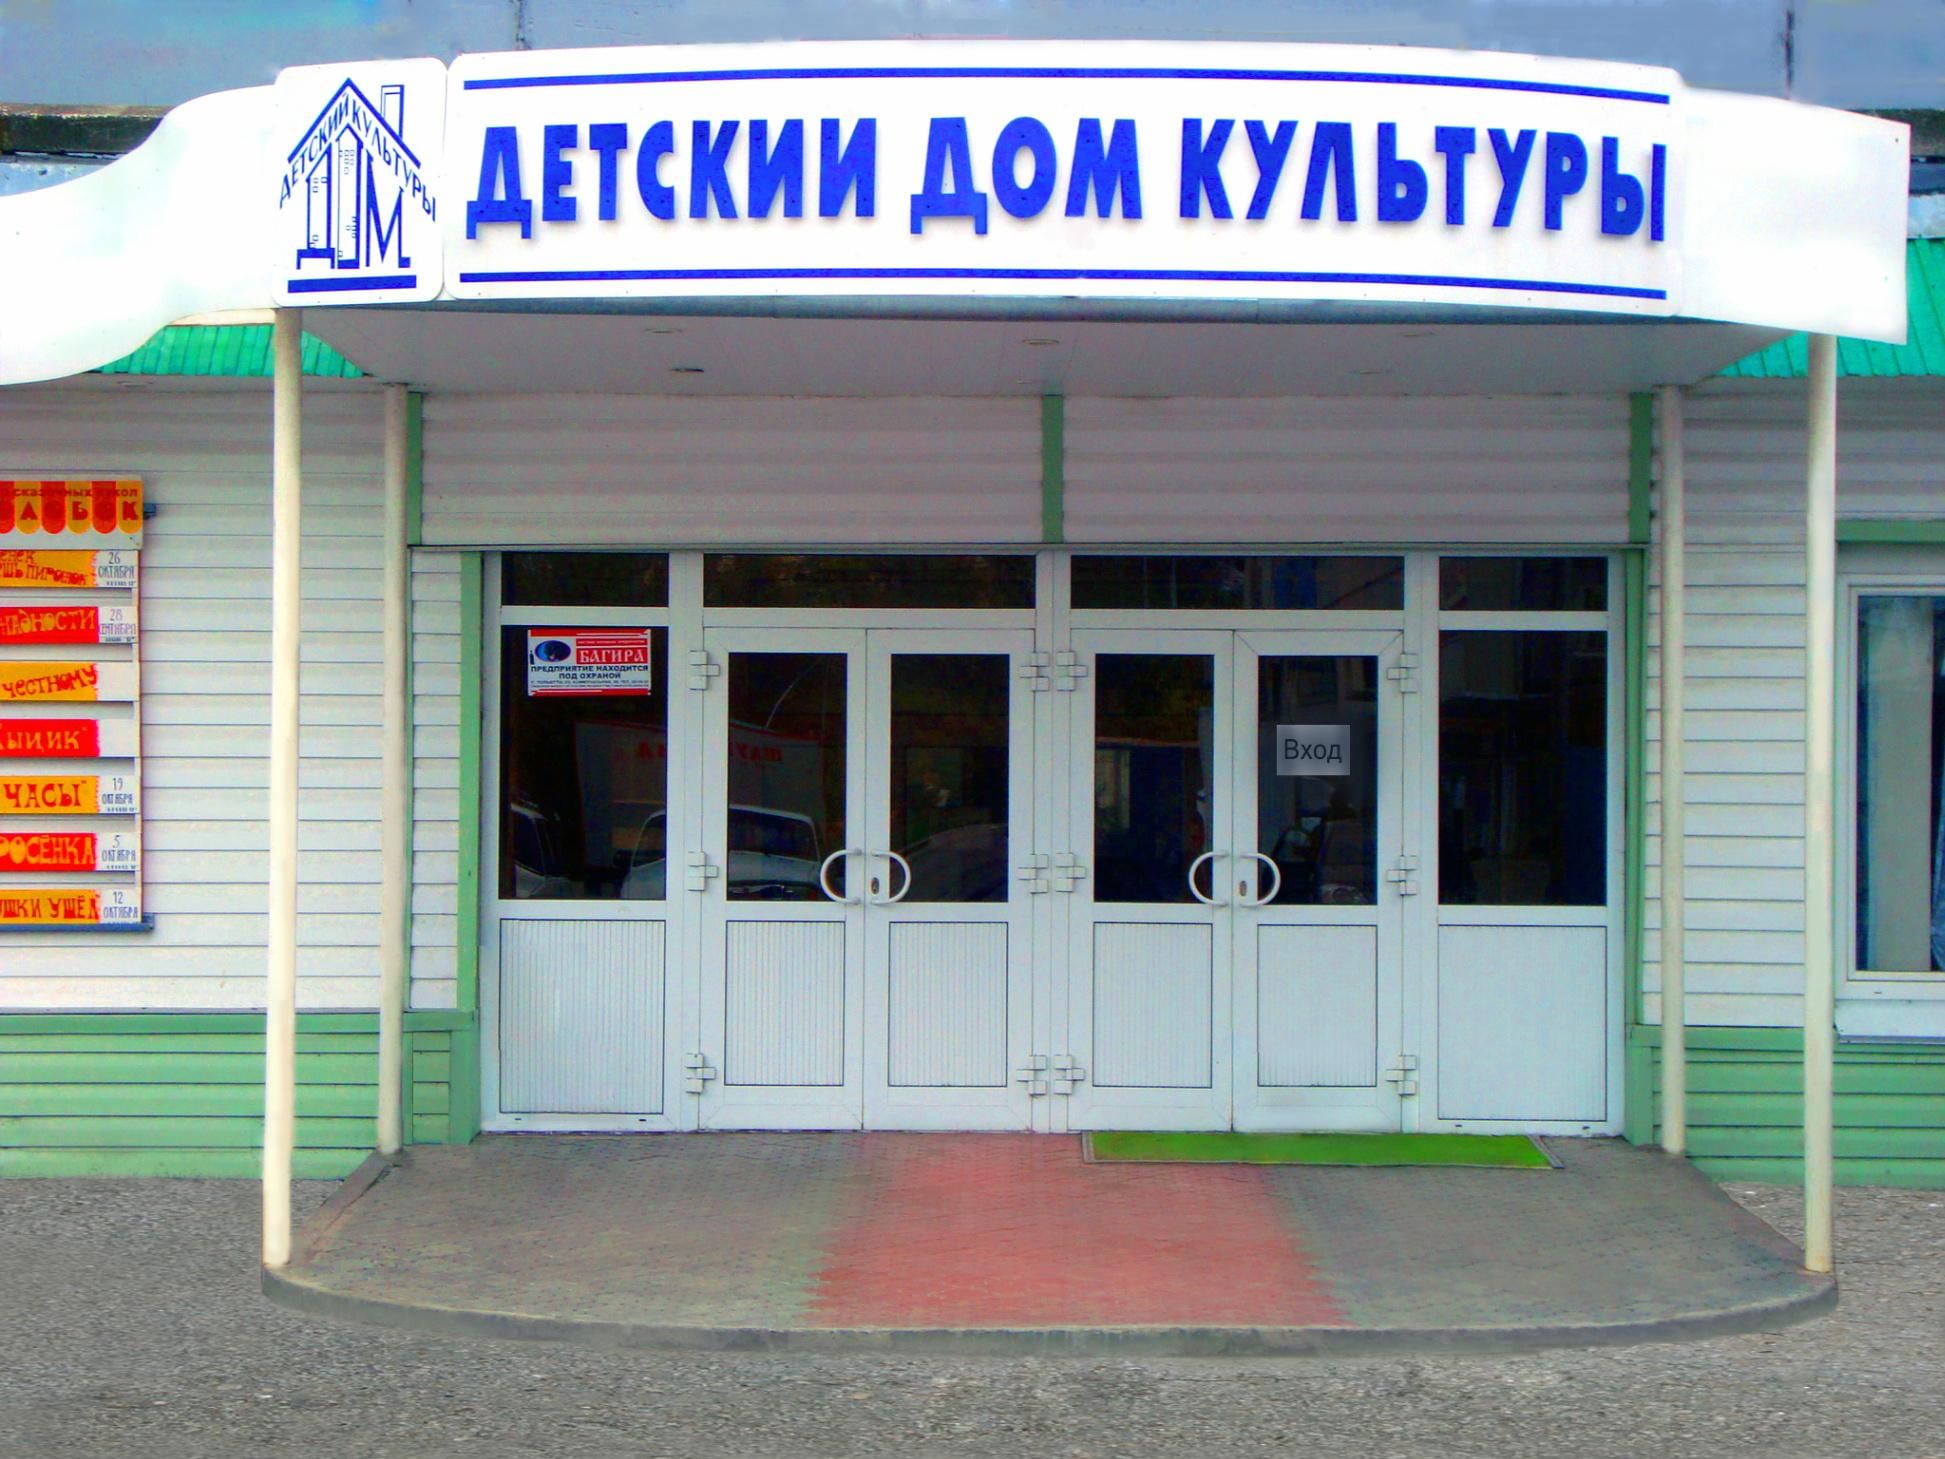 Детский дом культуры в Тольятти на ул. Свердлова, 51 Тольятти